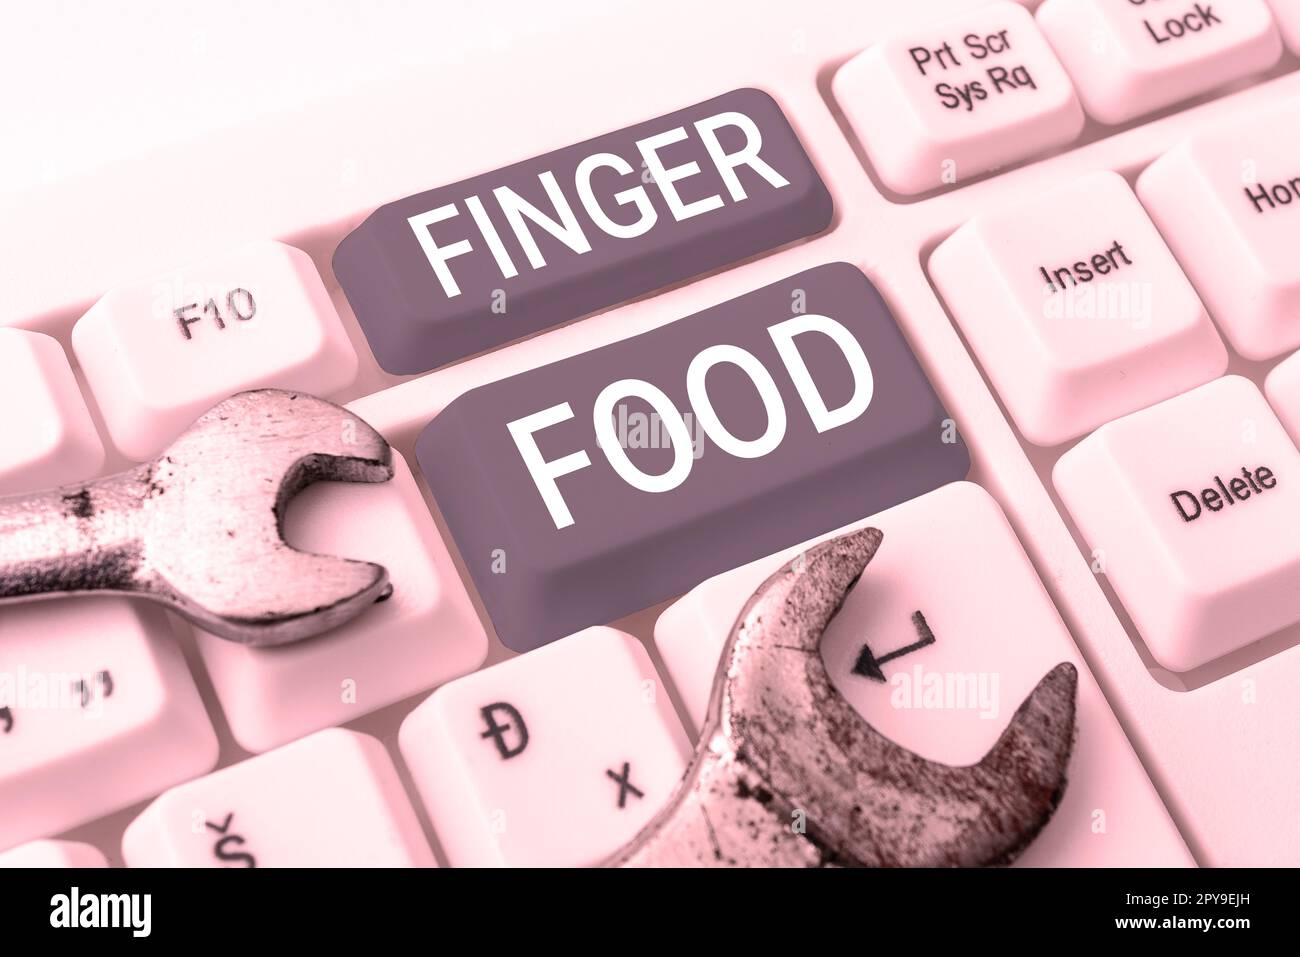 Écriture affichant le texte Finger Food. Internet concept produits et digestifs qui doit être tenu avec les doigts pour manger Banque D'Images